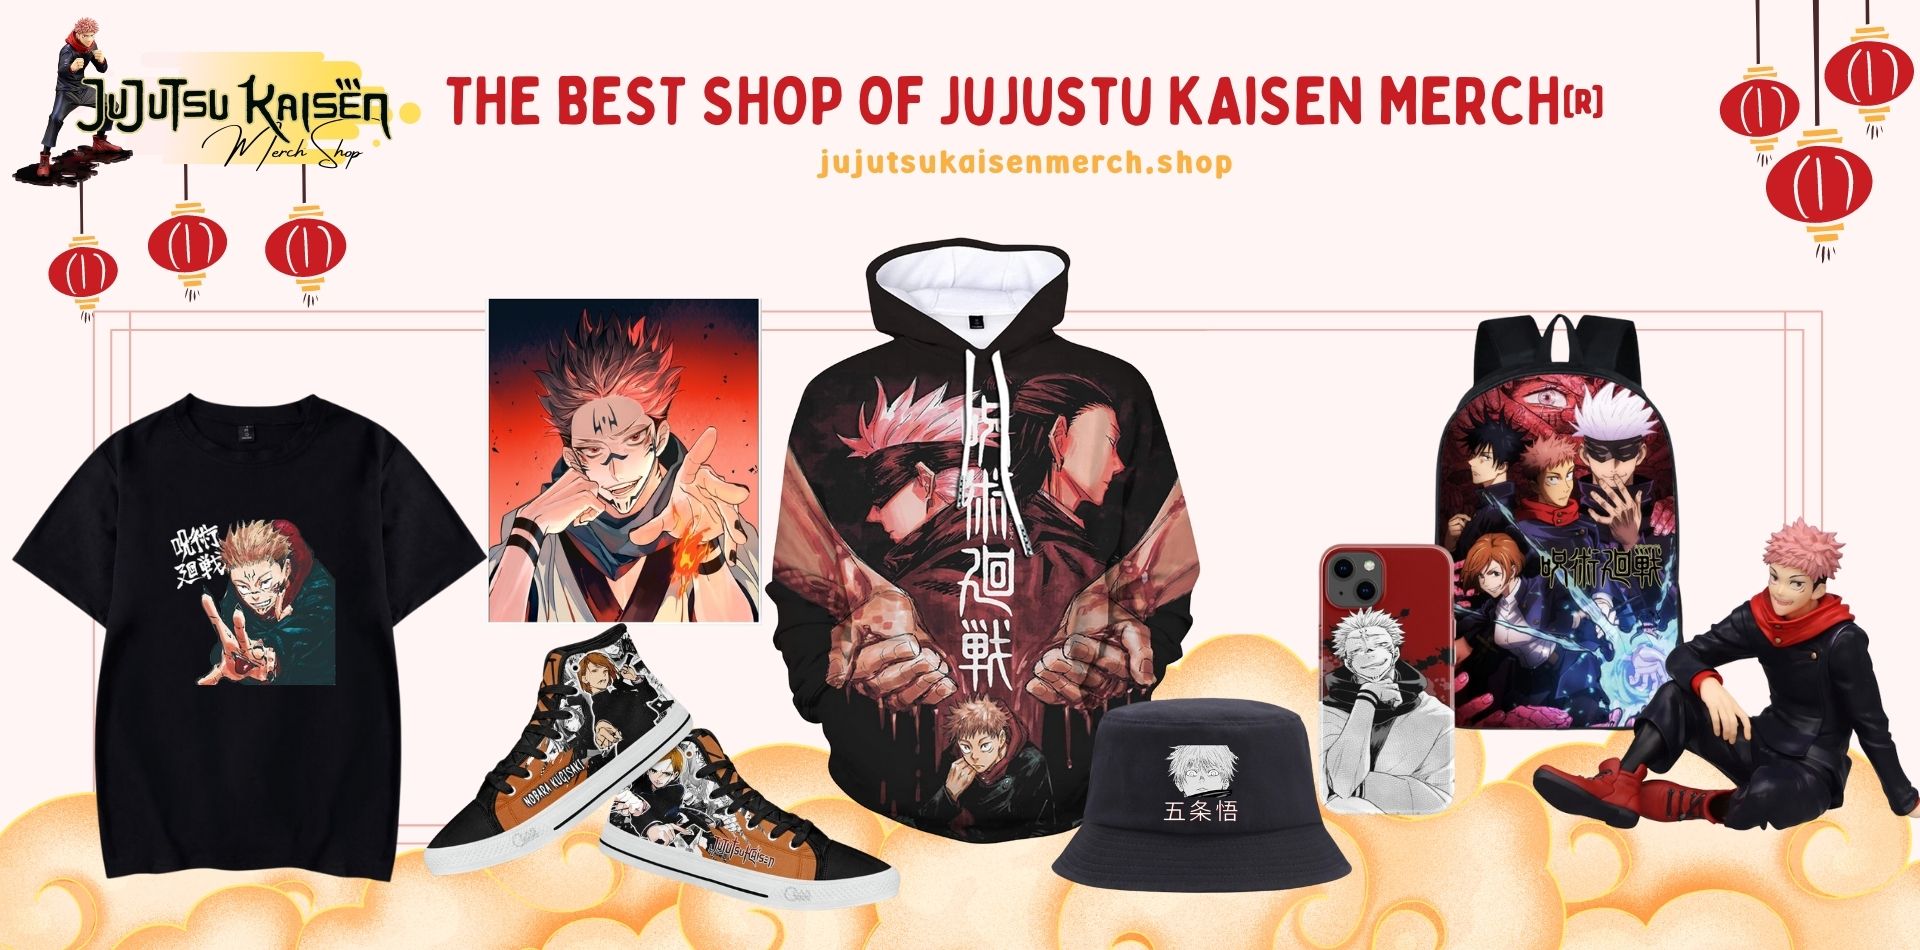 Jujutsu Kaisen Merch Shop Web Banner - Jujutsu Kaisen Merch Shop